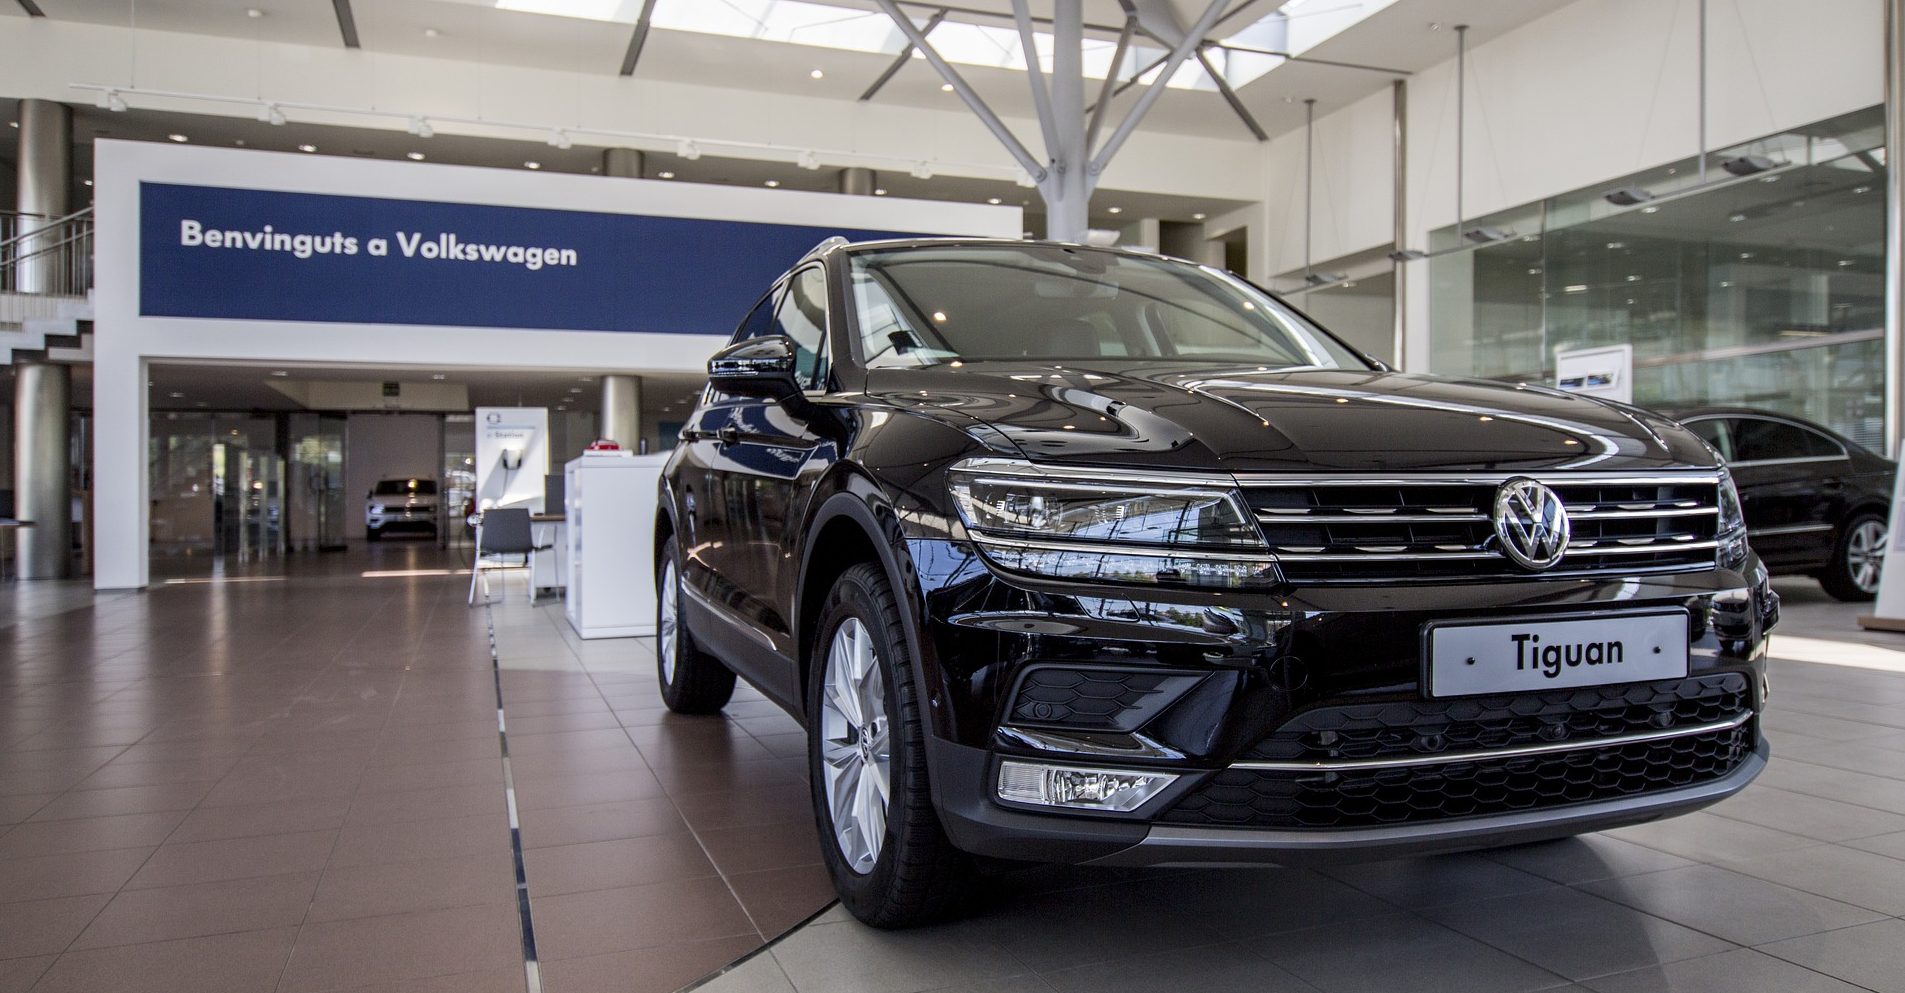 Profeco alerta por fallas en 7 autos de la marca Volkswagen